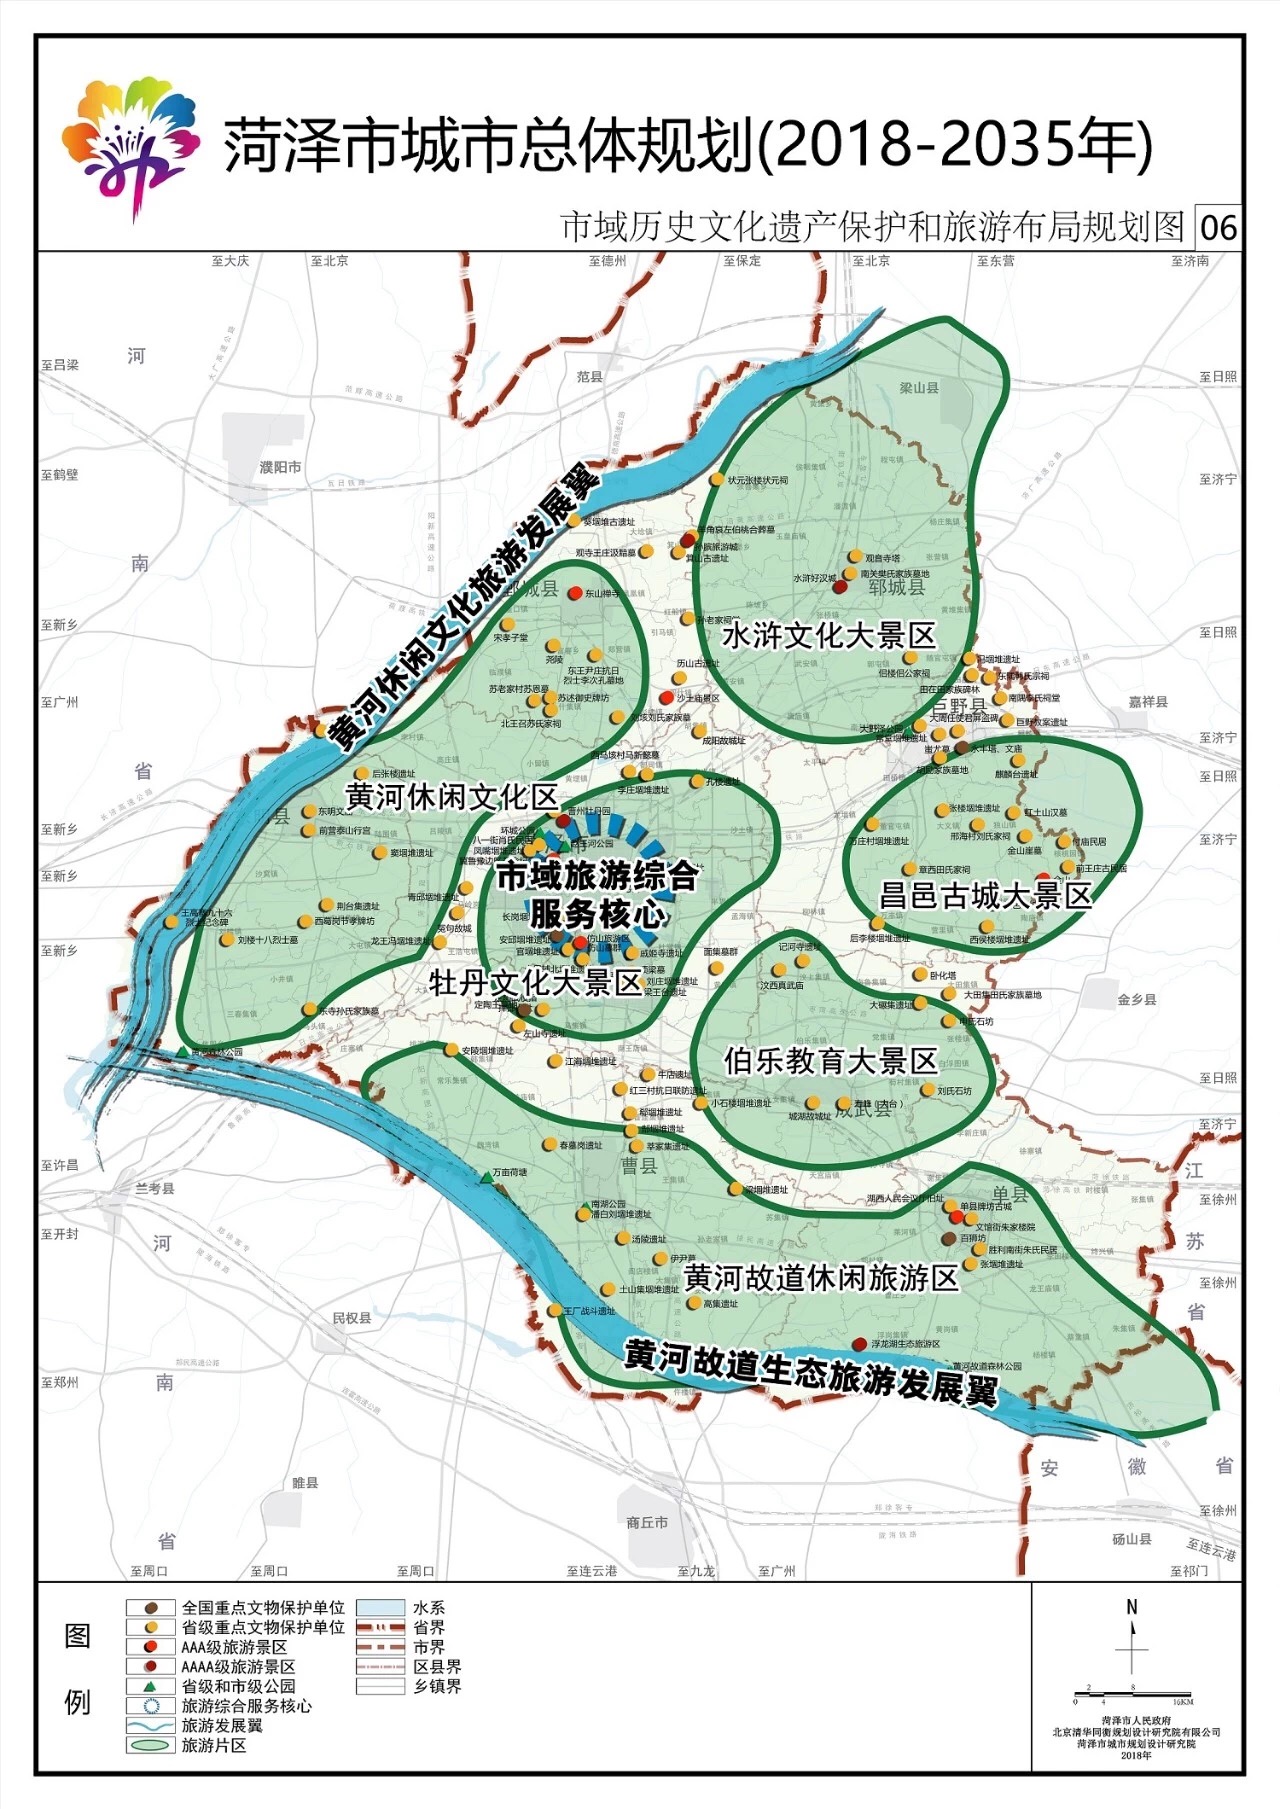 重磅《菏泽市城市总体规划(2018-2035年》公示